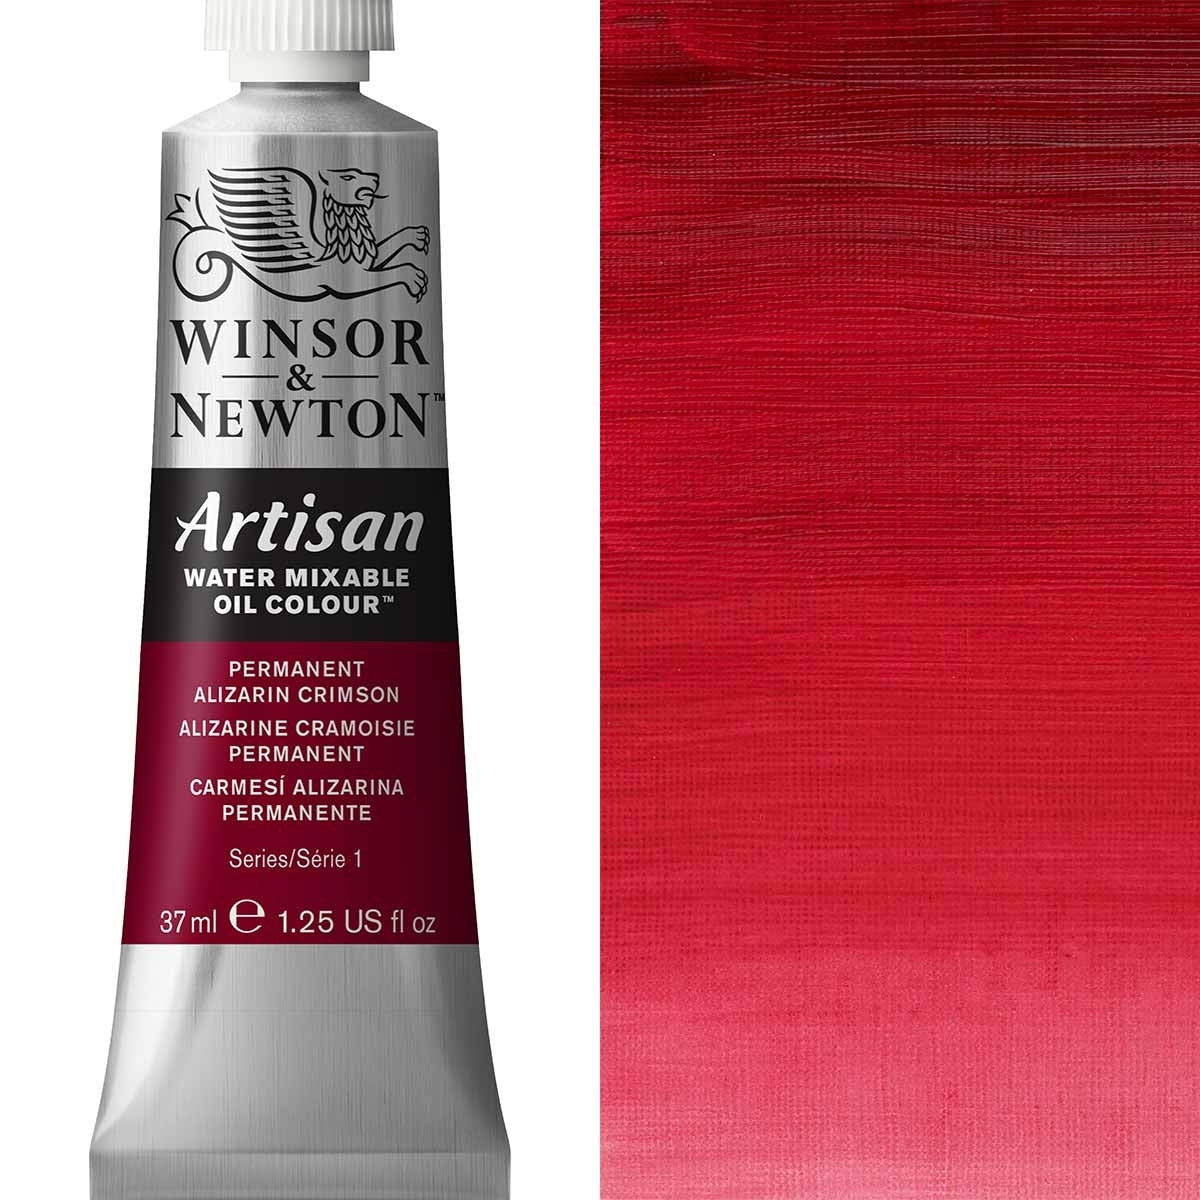 Winsor e Newton - Watermixable di colore olio artigianale - 37 ml - Alizarin Crimson permanente